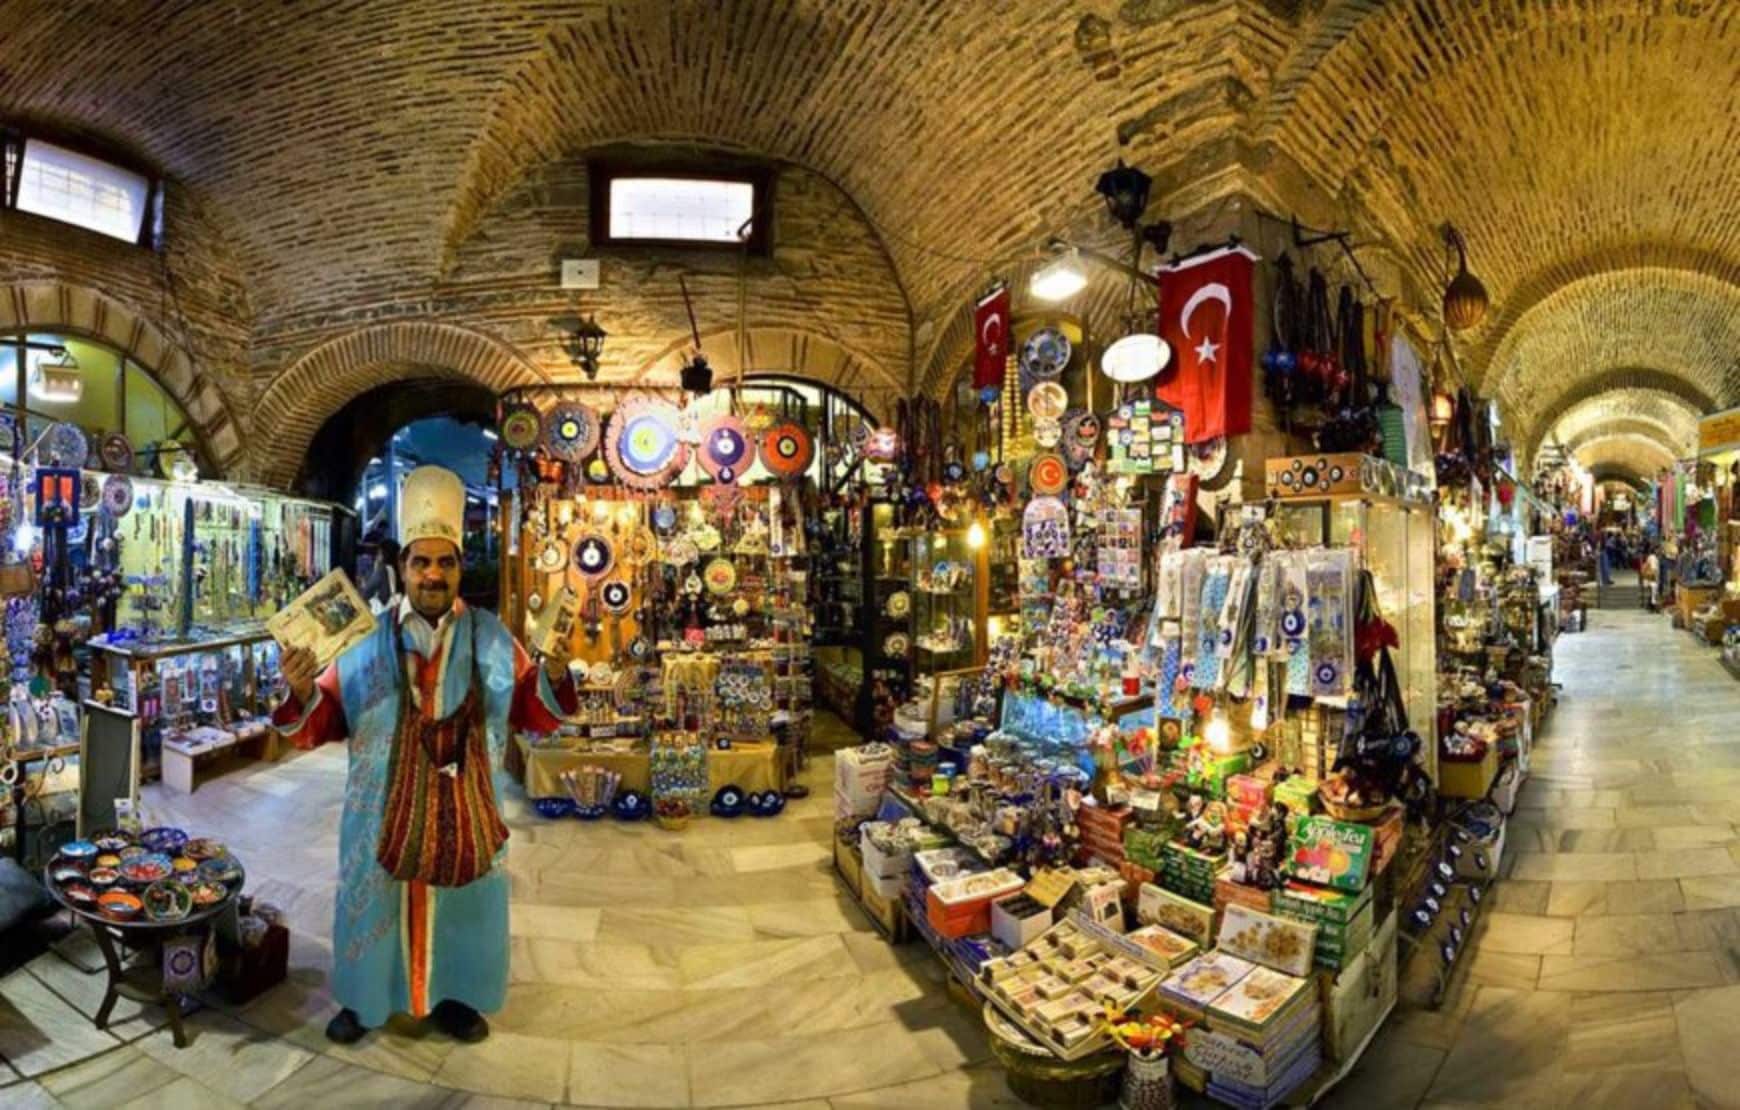 Izmir City Private Tour - Kemeralti Bazaar